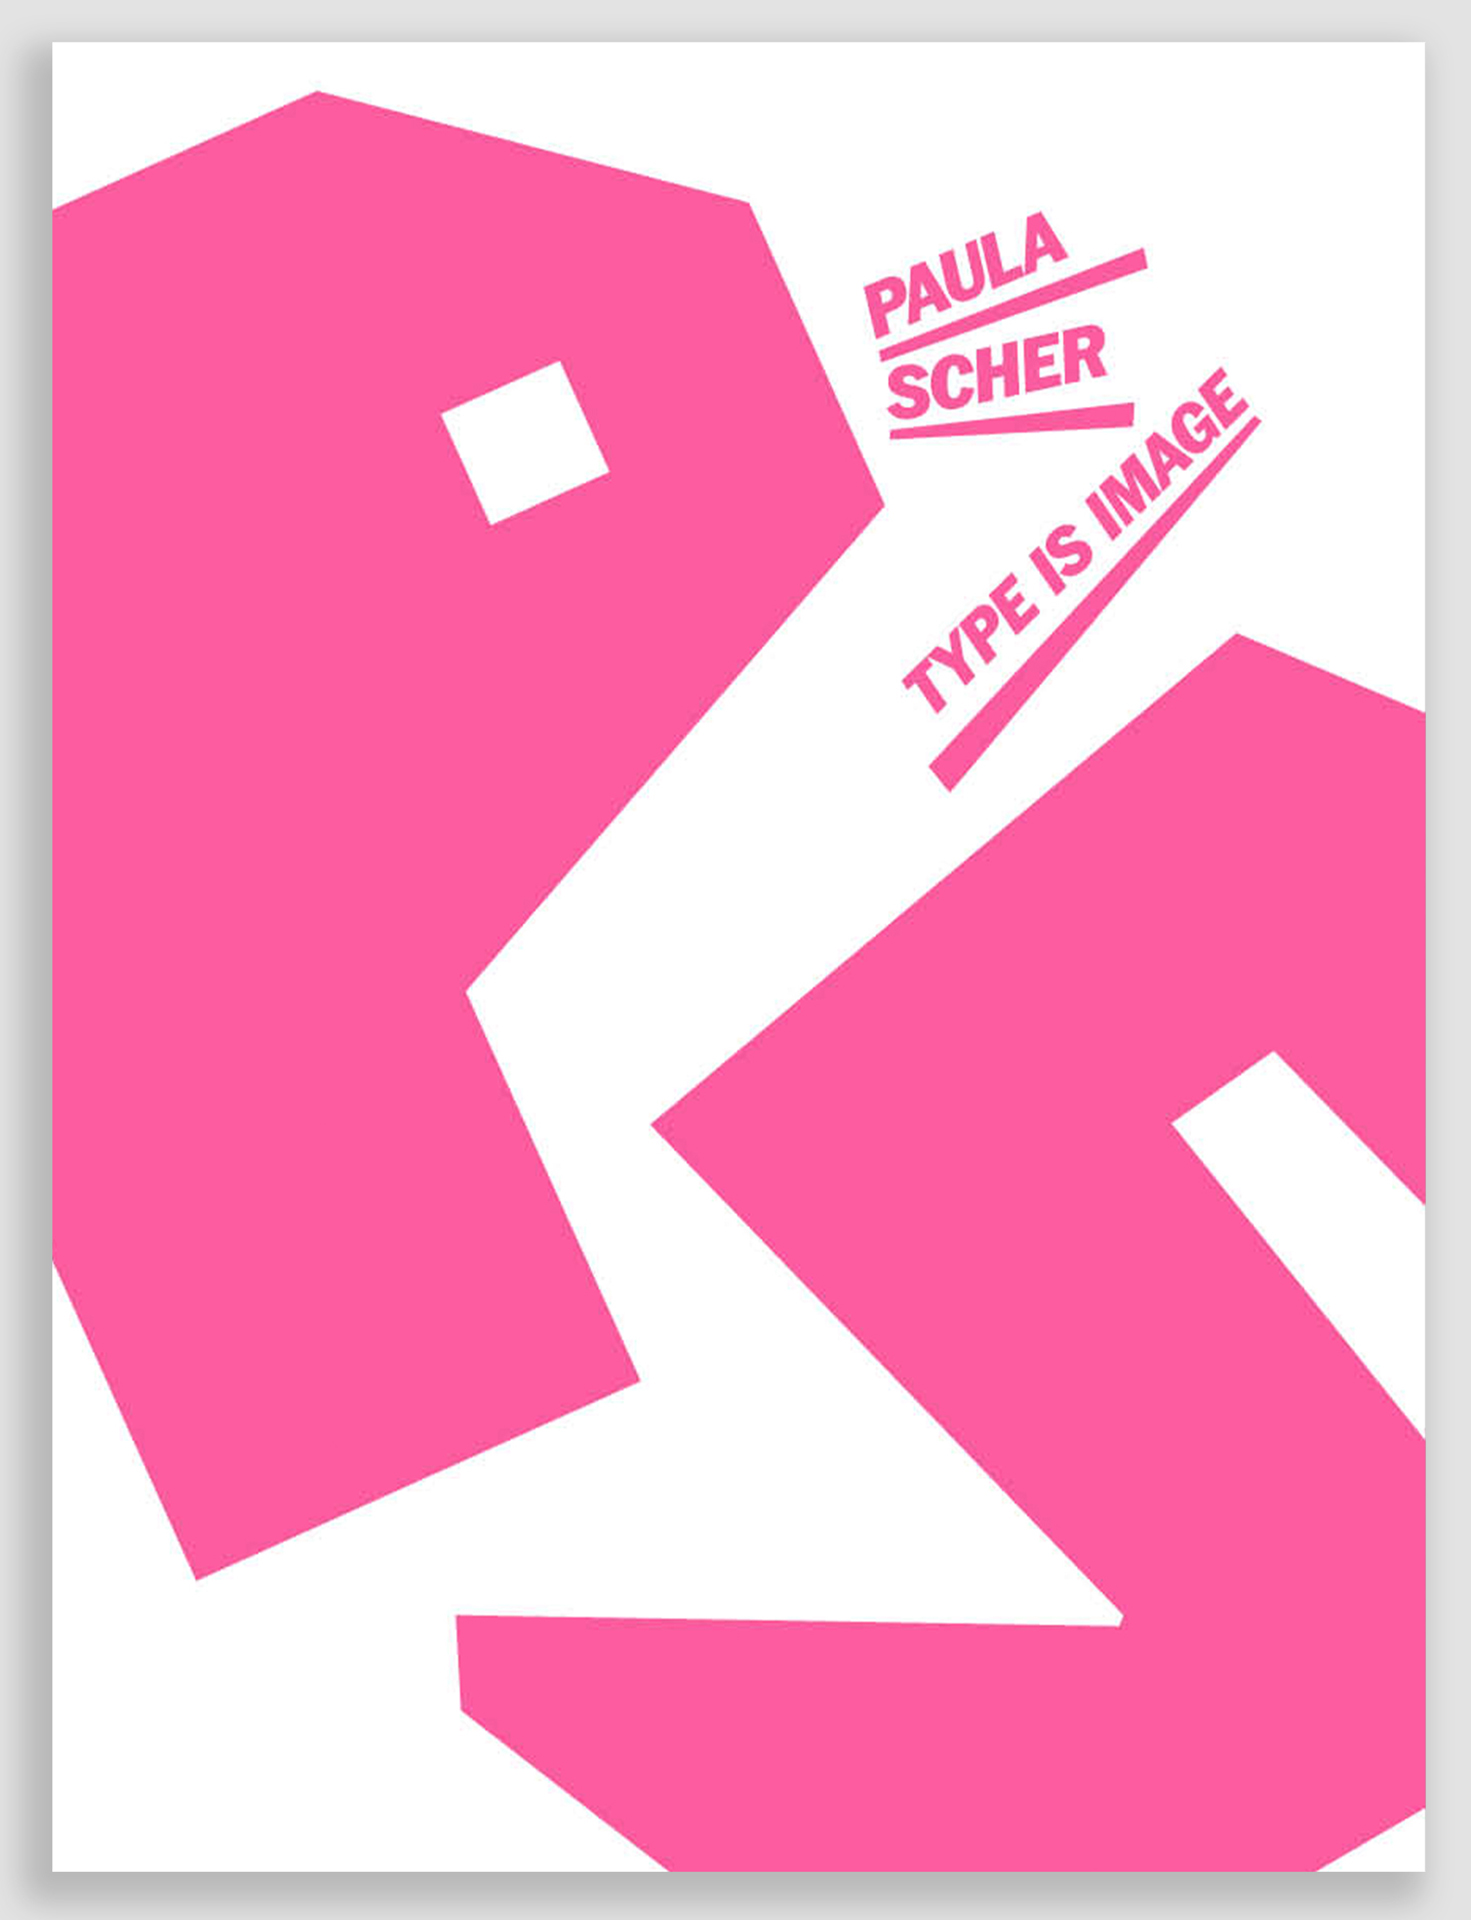 Cover Ausstellungskatalog. Die Buchstaben P und S sind in Pink groß auf dem Katalogcover verteilt. In der rechten oberen Ecke steht in Pink Paula Scher, Type is image.